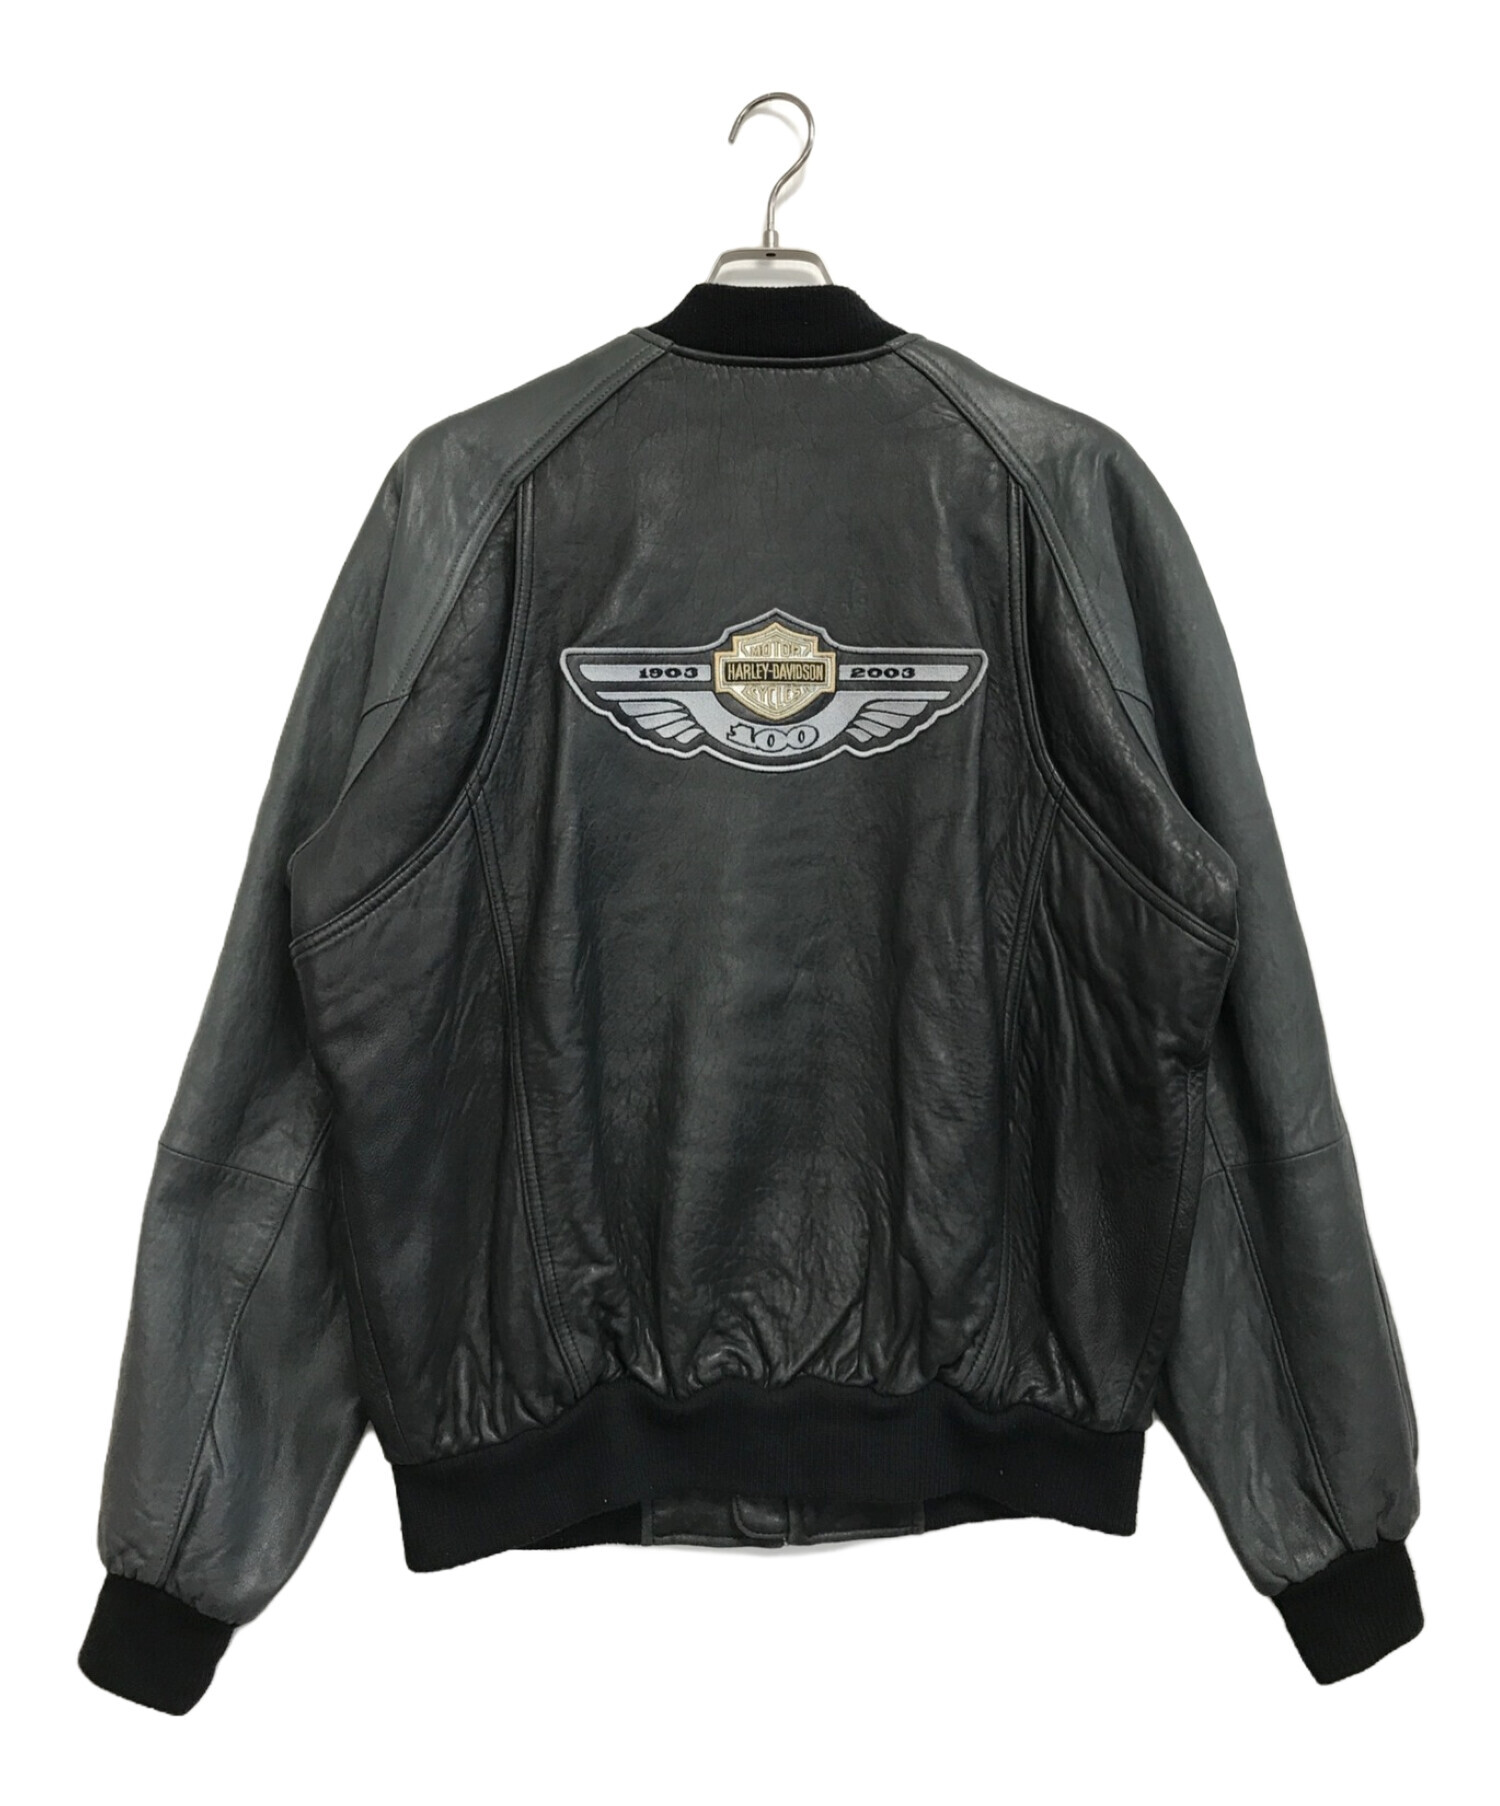 【爆買い通販】Harley Davidson レザージャケット ジャケット・アウター